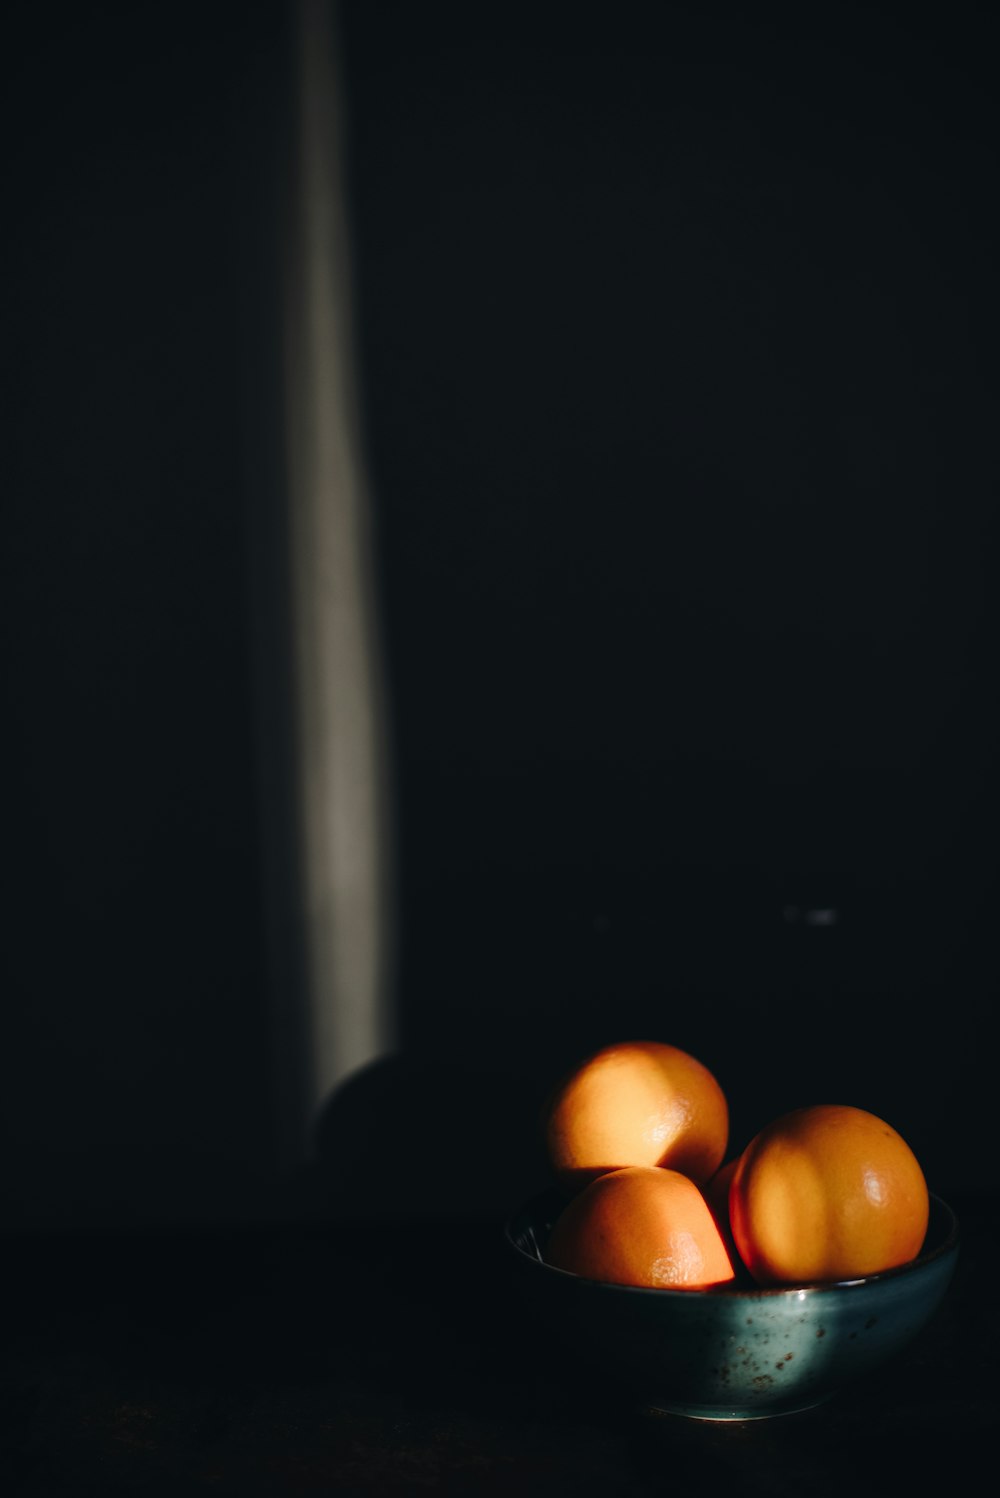 drei orangefarbene Zitrusfrüchte mit Schale